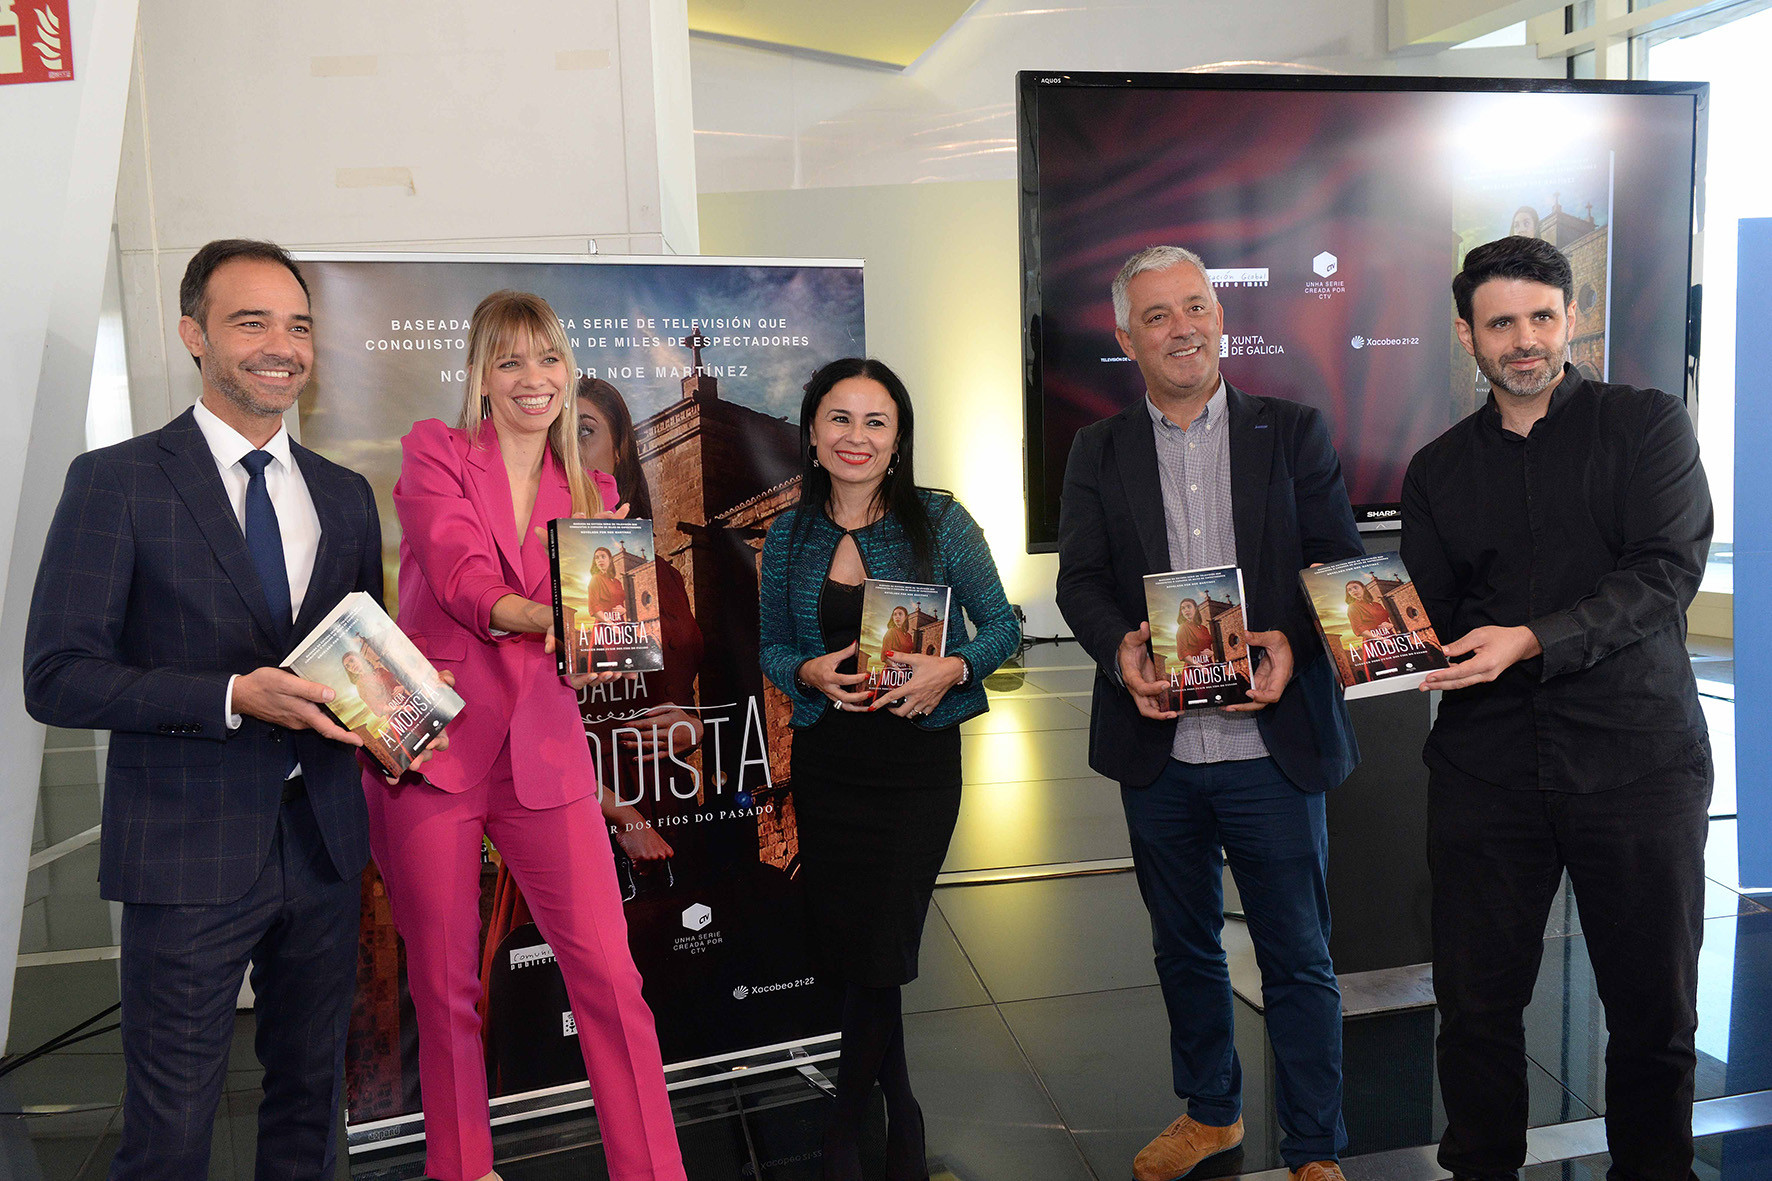 Xaime Arias (CRTVG), María Mera, Noe Martínez, Valentín García (Xunta de Galicia) y Ghaleb Jaber (CTV) durante la presentación del libro.